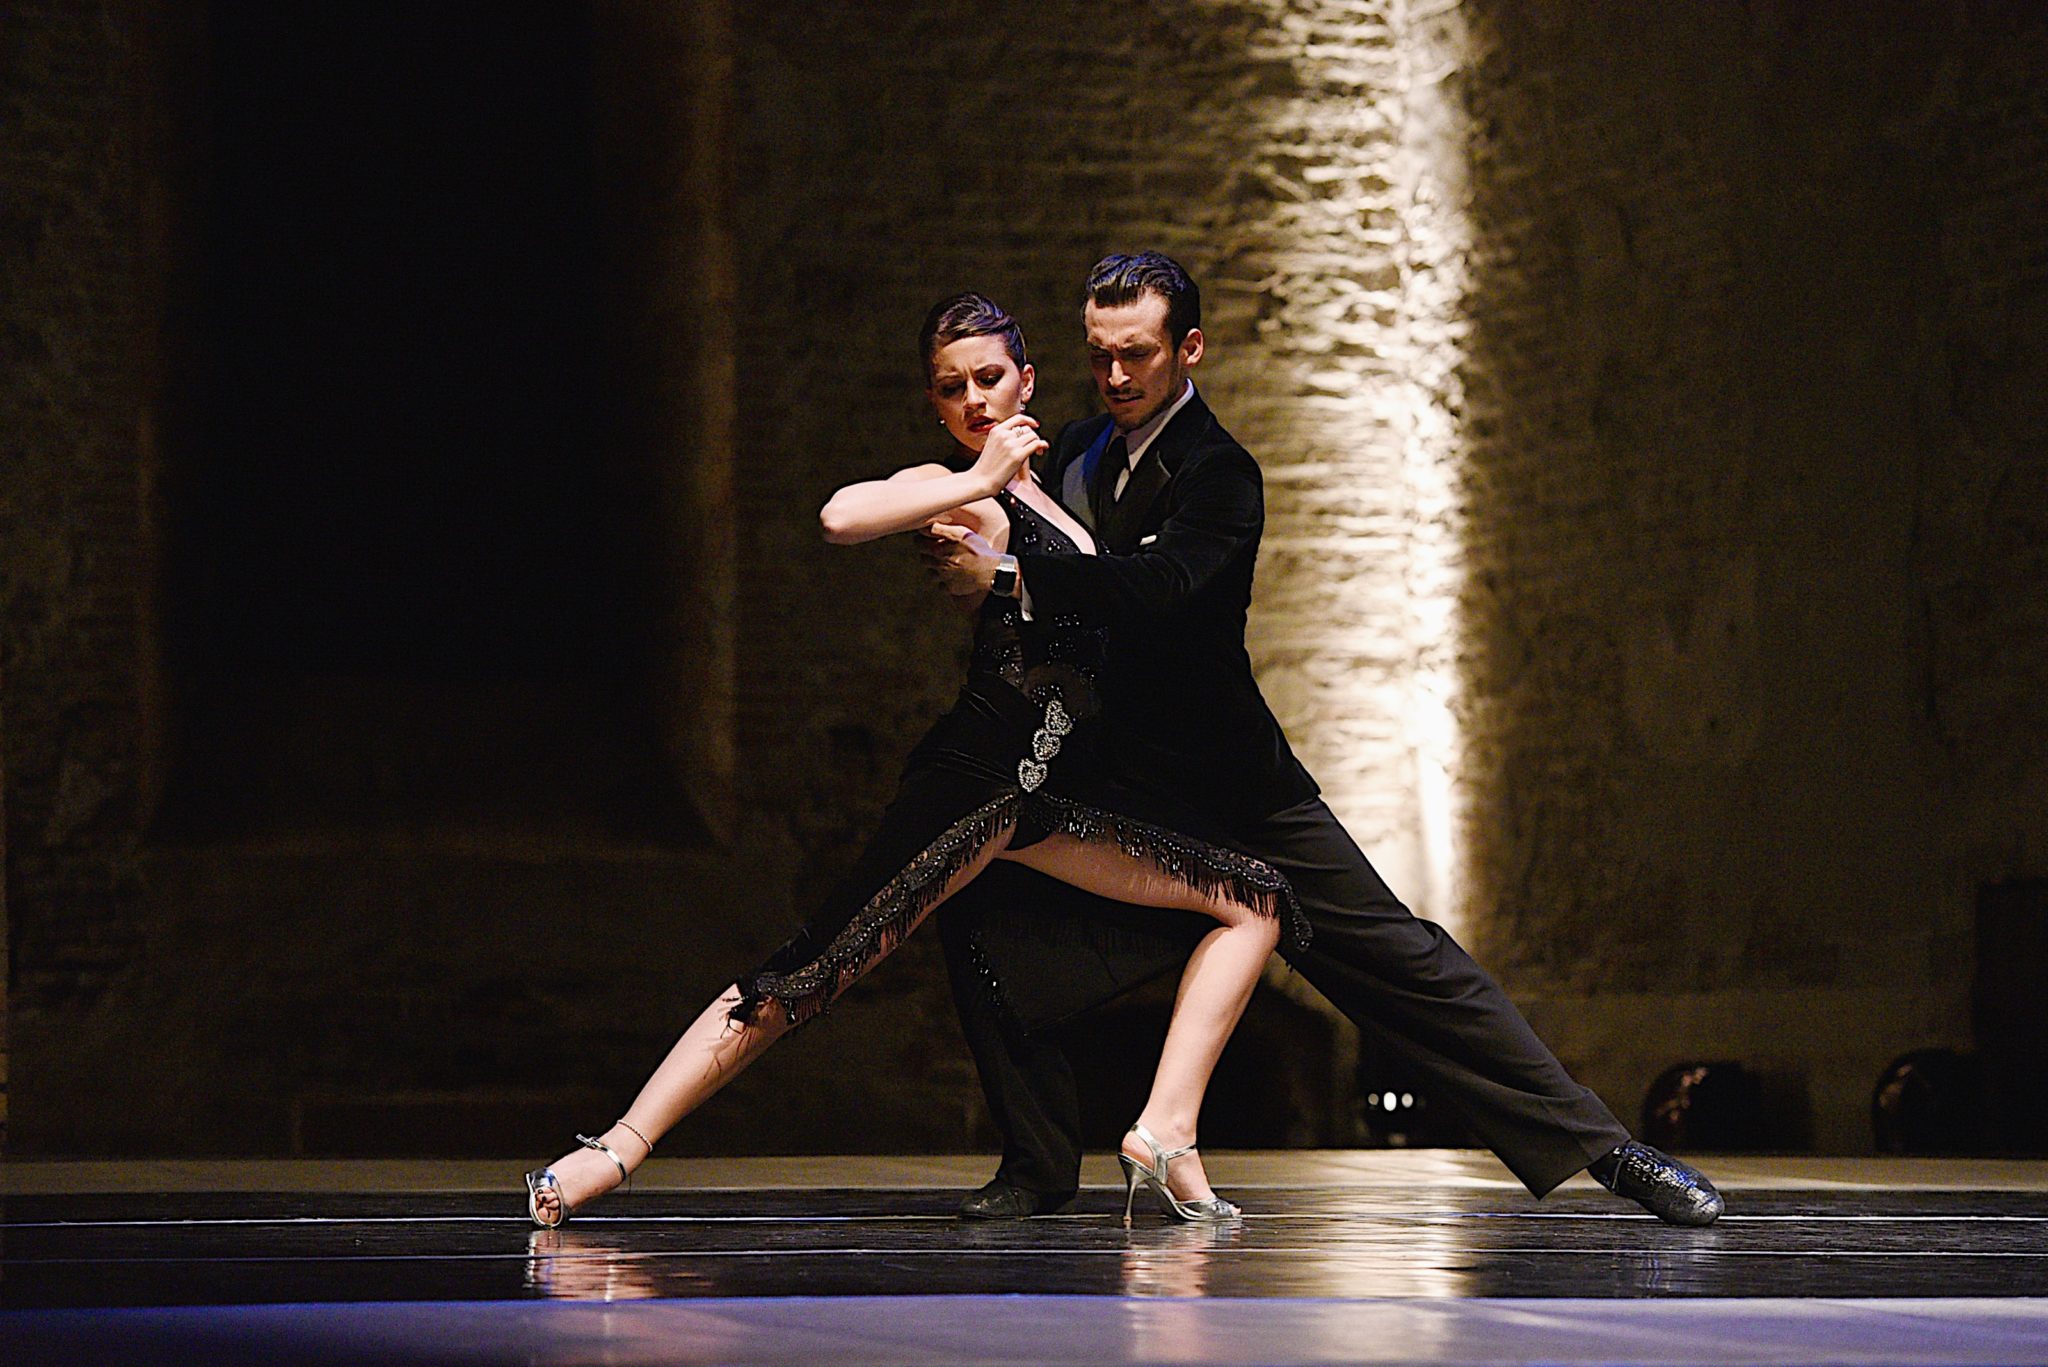 Corsi tango argentino il martedì alla Fattoria a Bologna